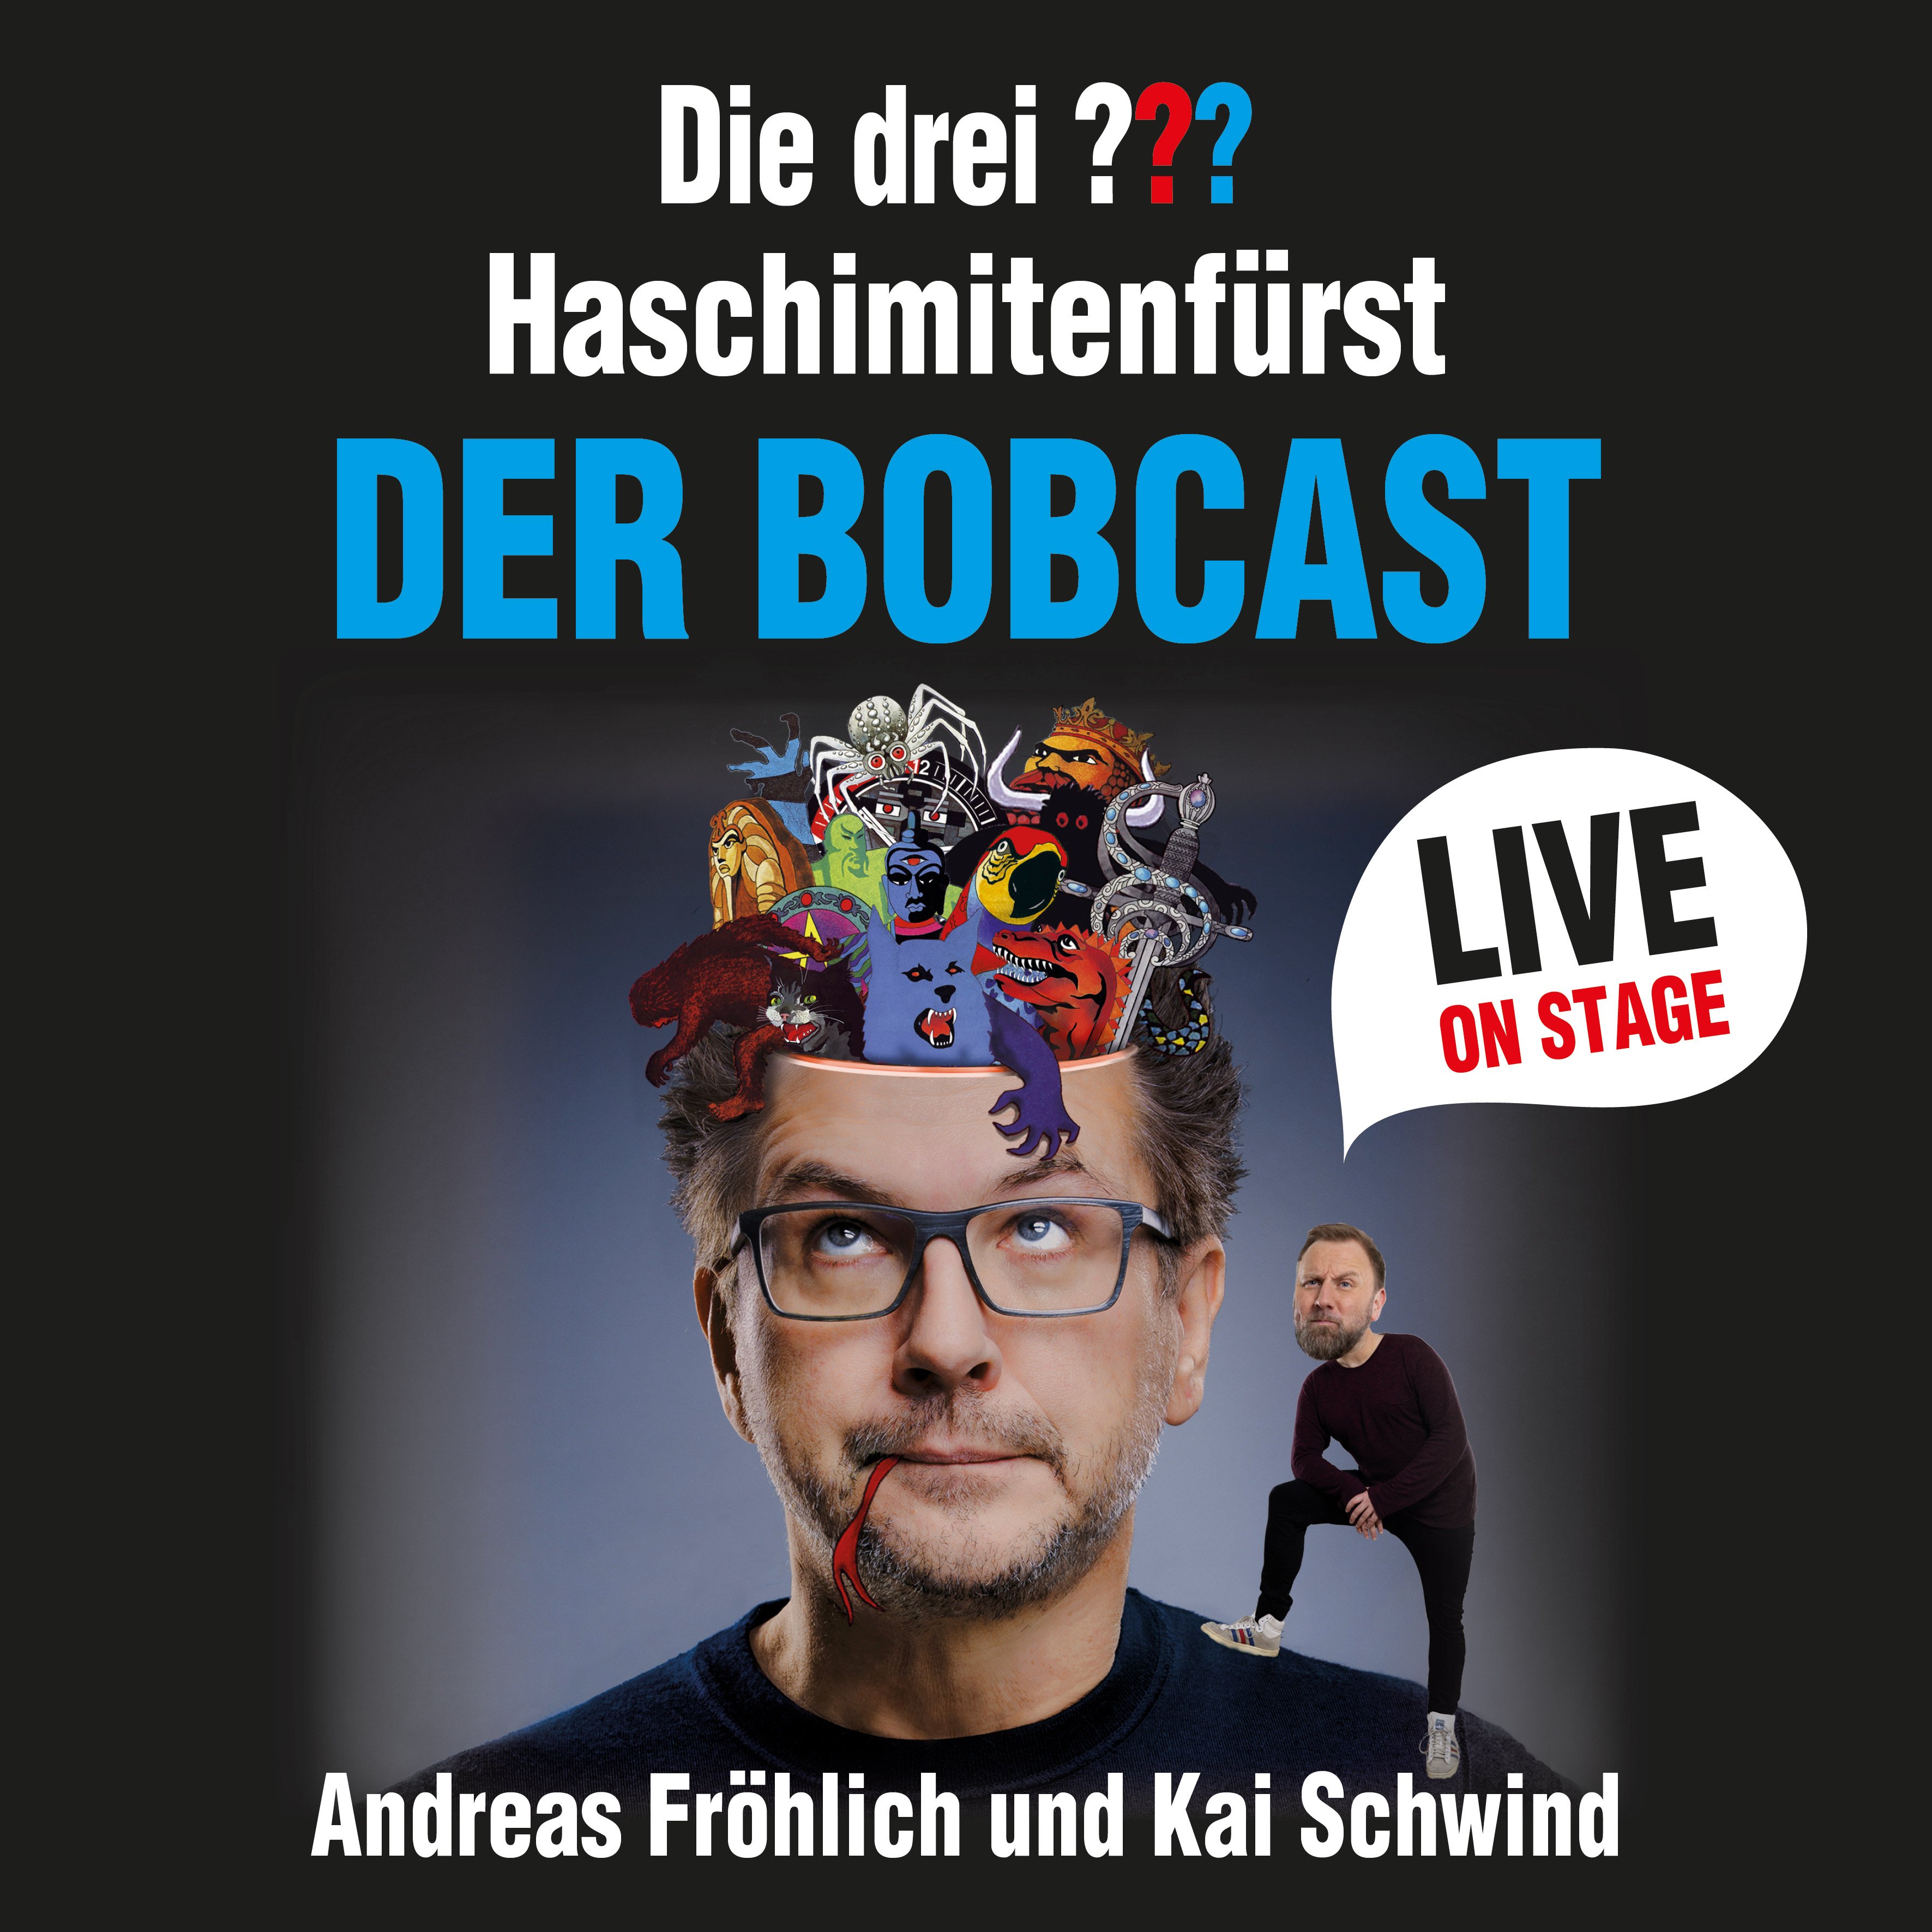 Haschimitenfürst - Der Bobcast LIVE